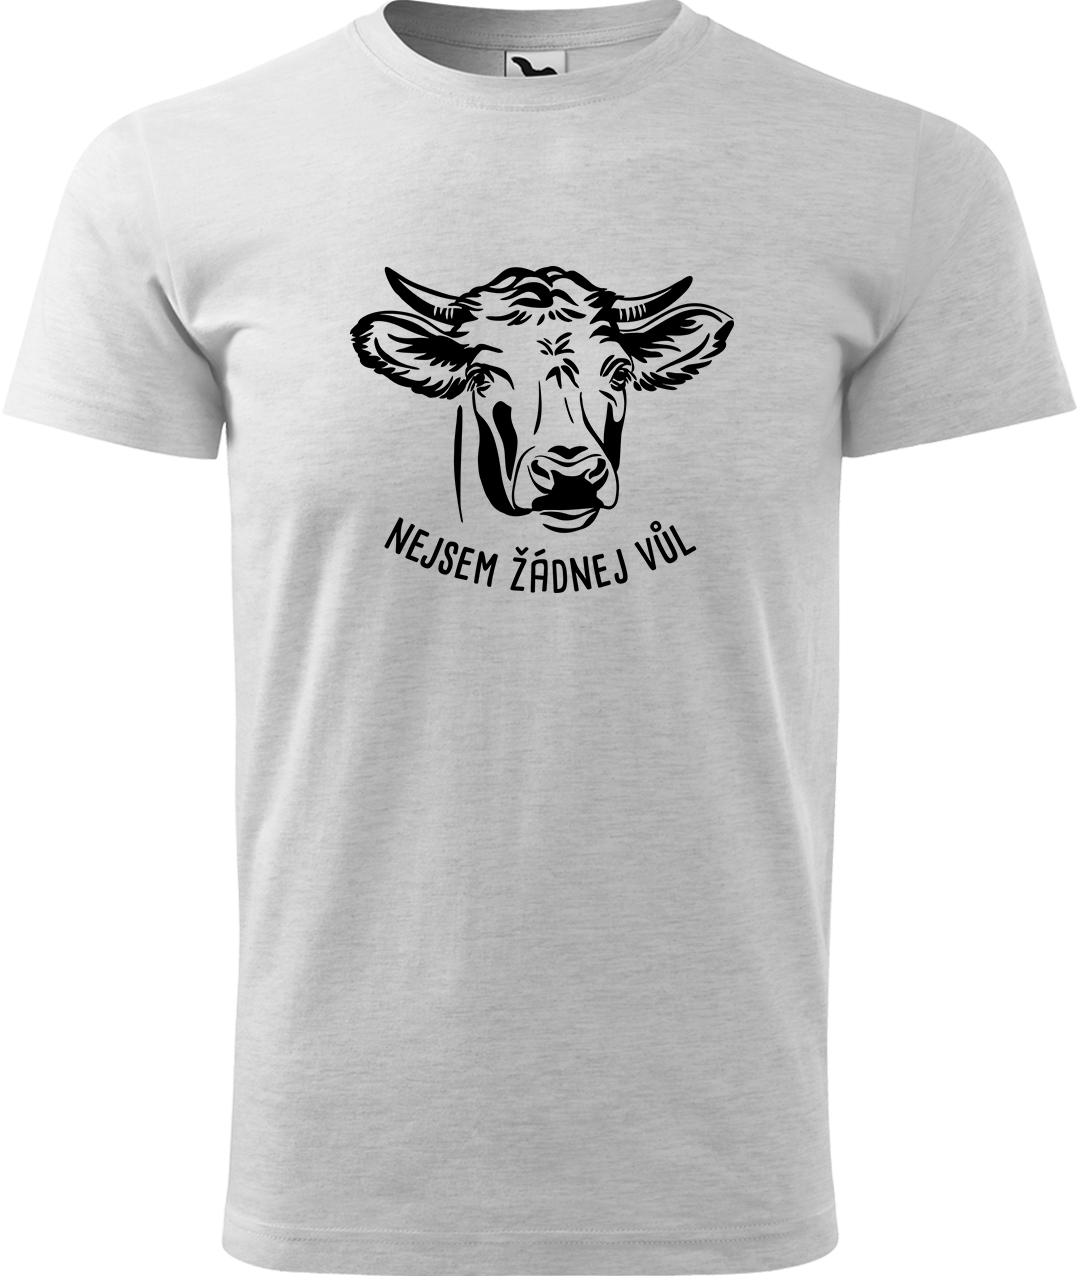 Pánské tričko s krávou - Nejsem žádnej vůl Velikost: M, Barva: Světle šedý melír (03), Střih: pánský